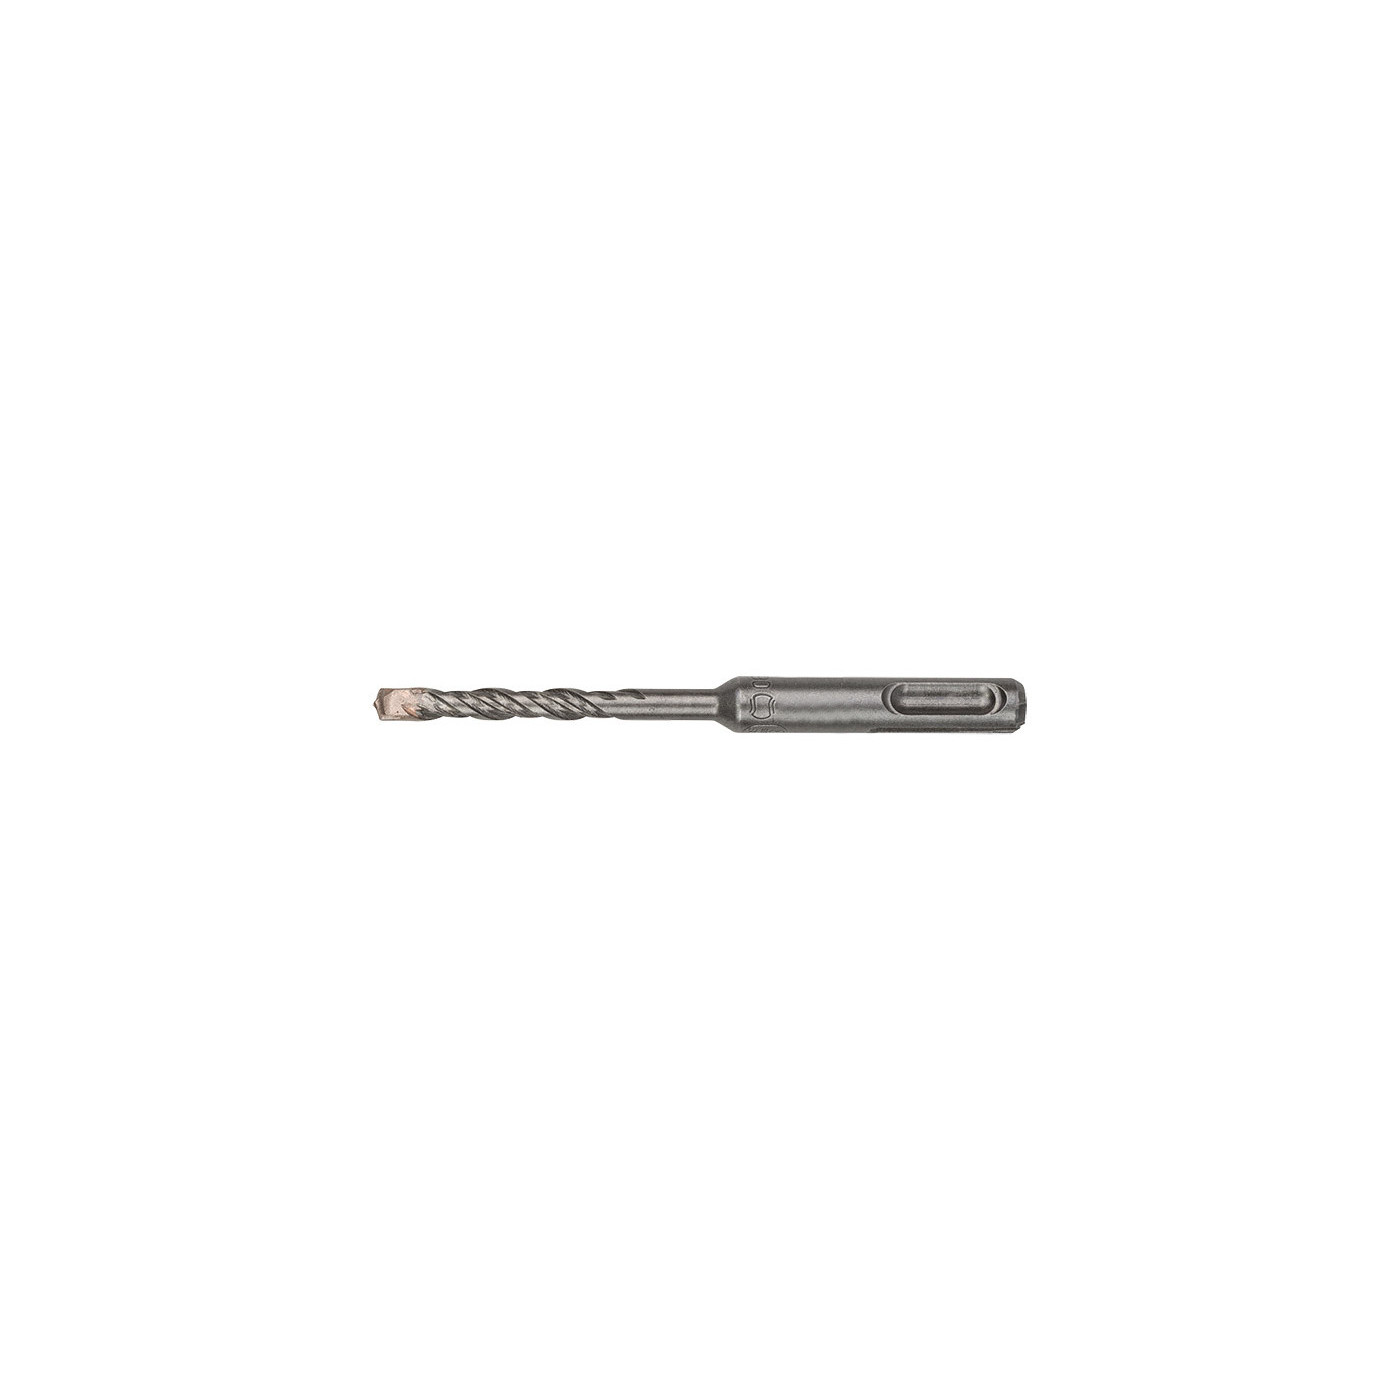 SDS PLUS hammer drill bit (10x160 mm)